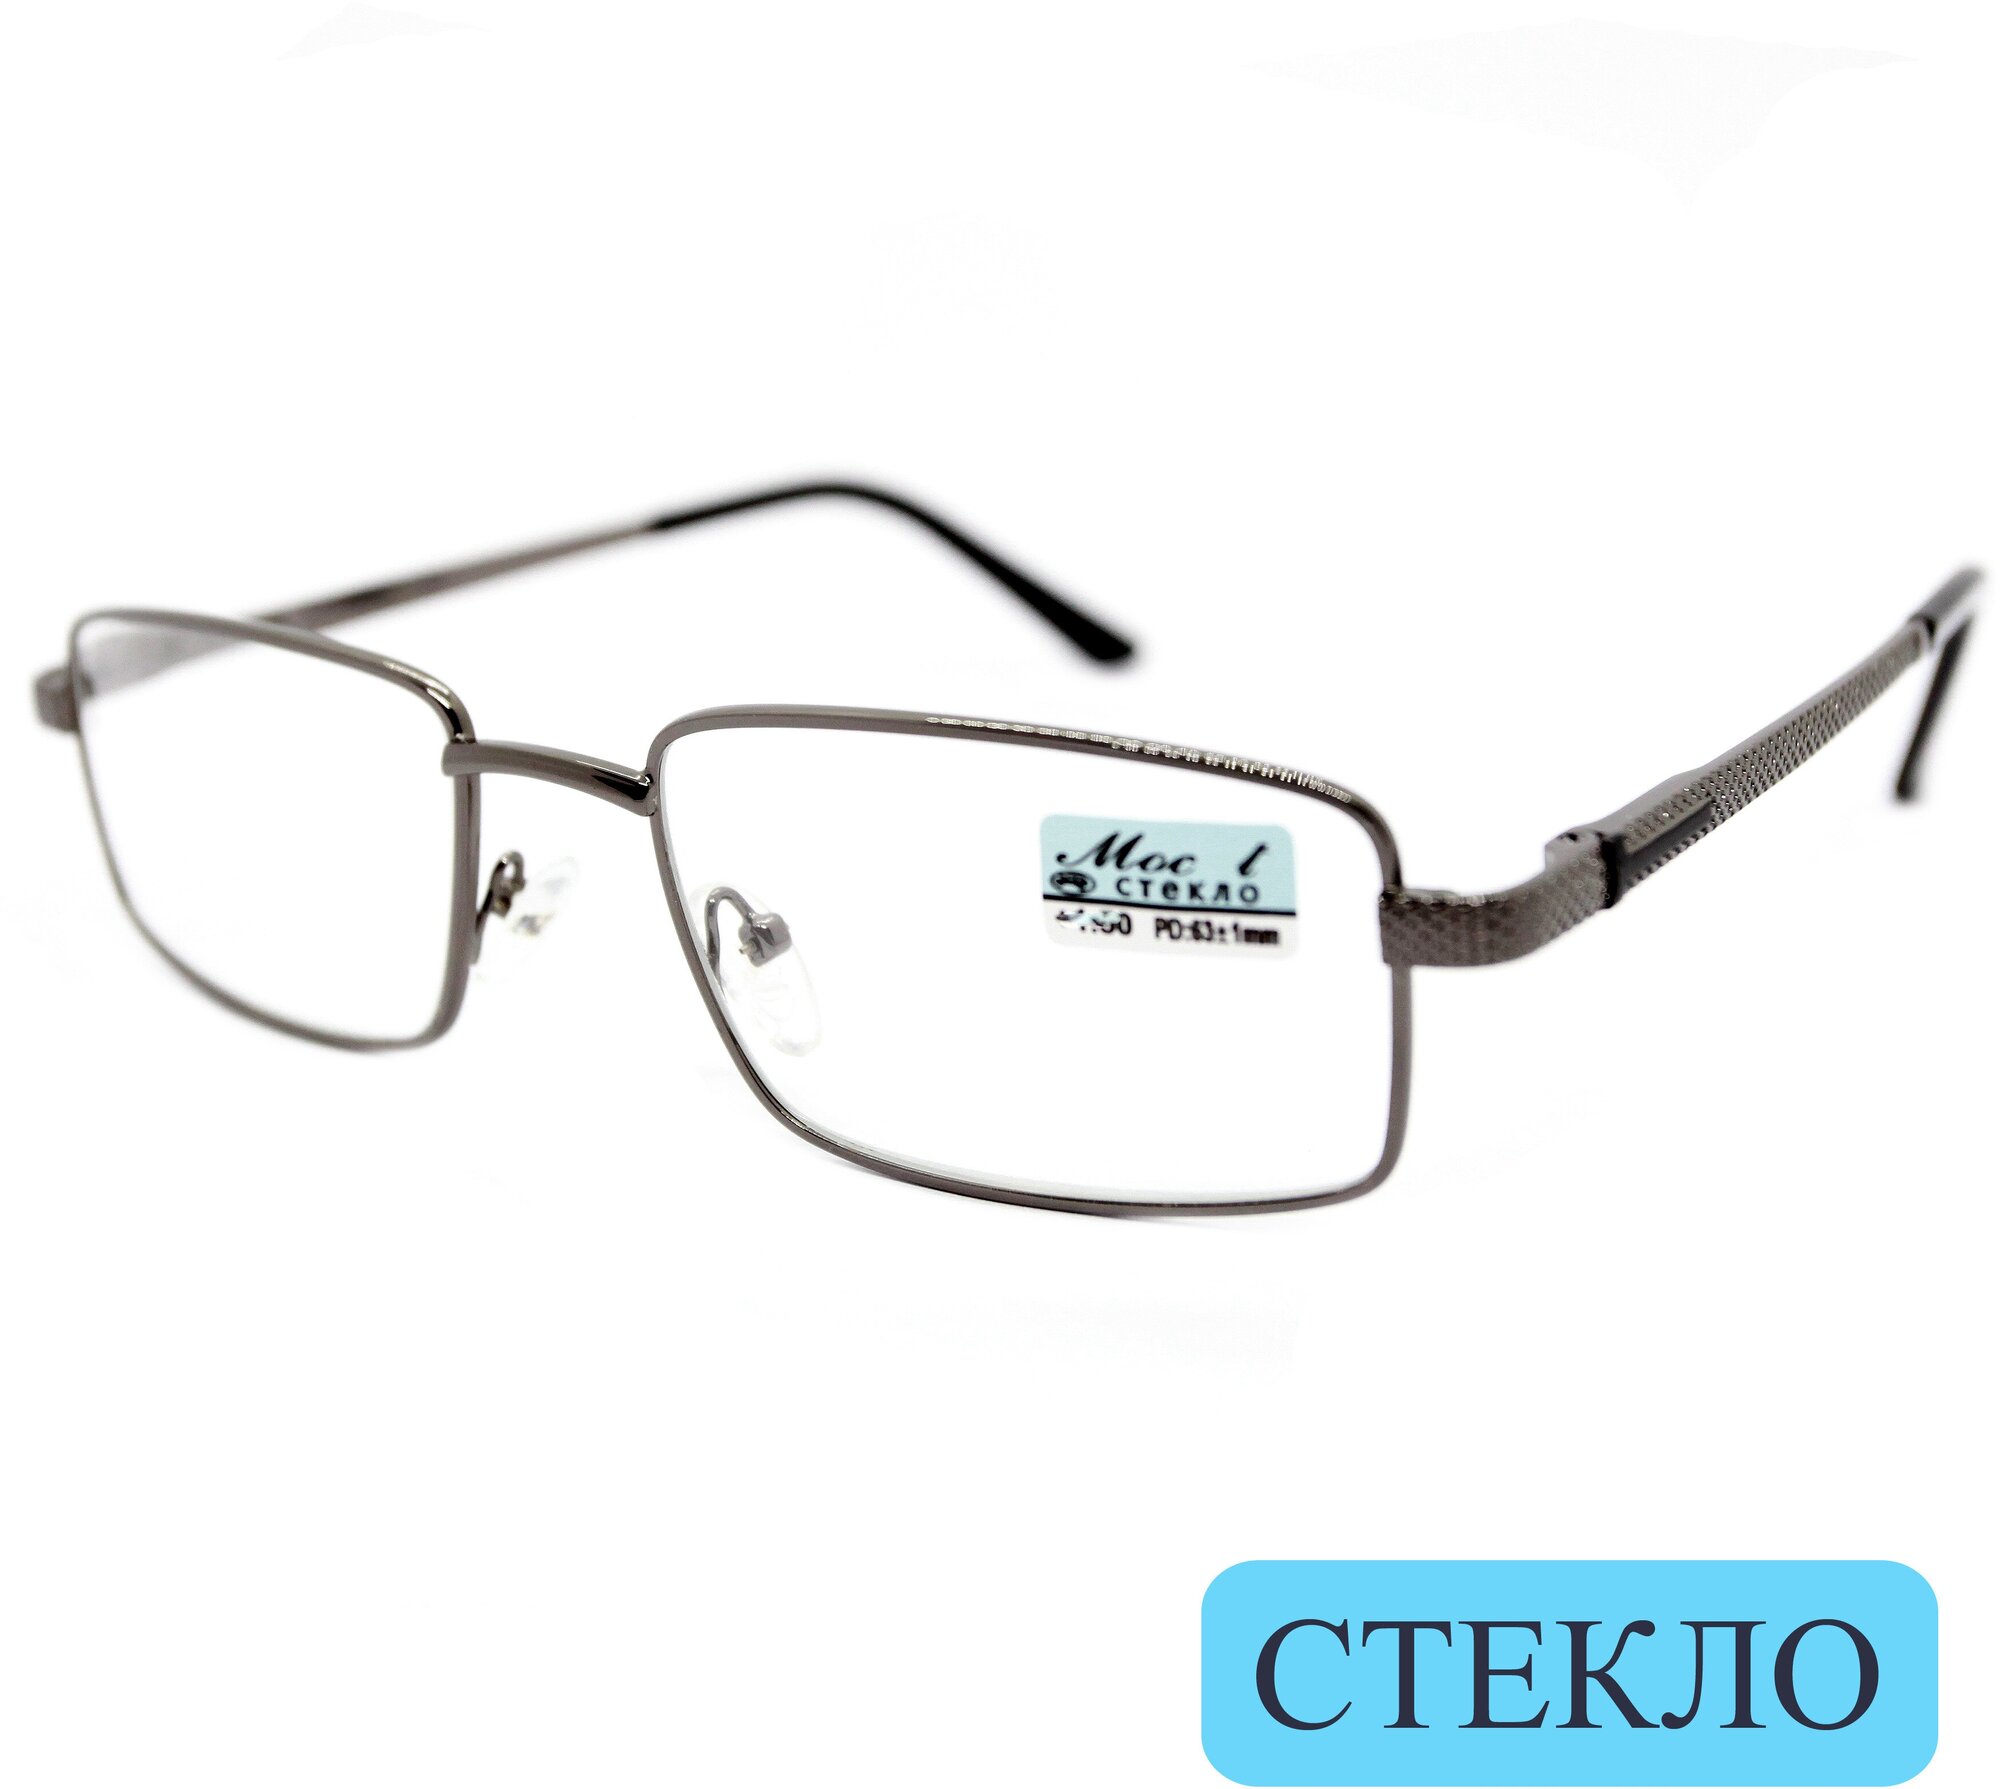 Готовые очки из медицинской стали со стеклом (+2.25) мост 129 M2, линза стекло, без футляра, цвет серый, РЦ 62-64